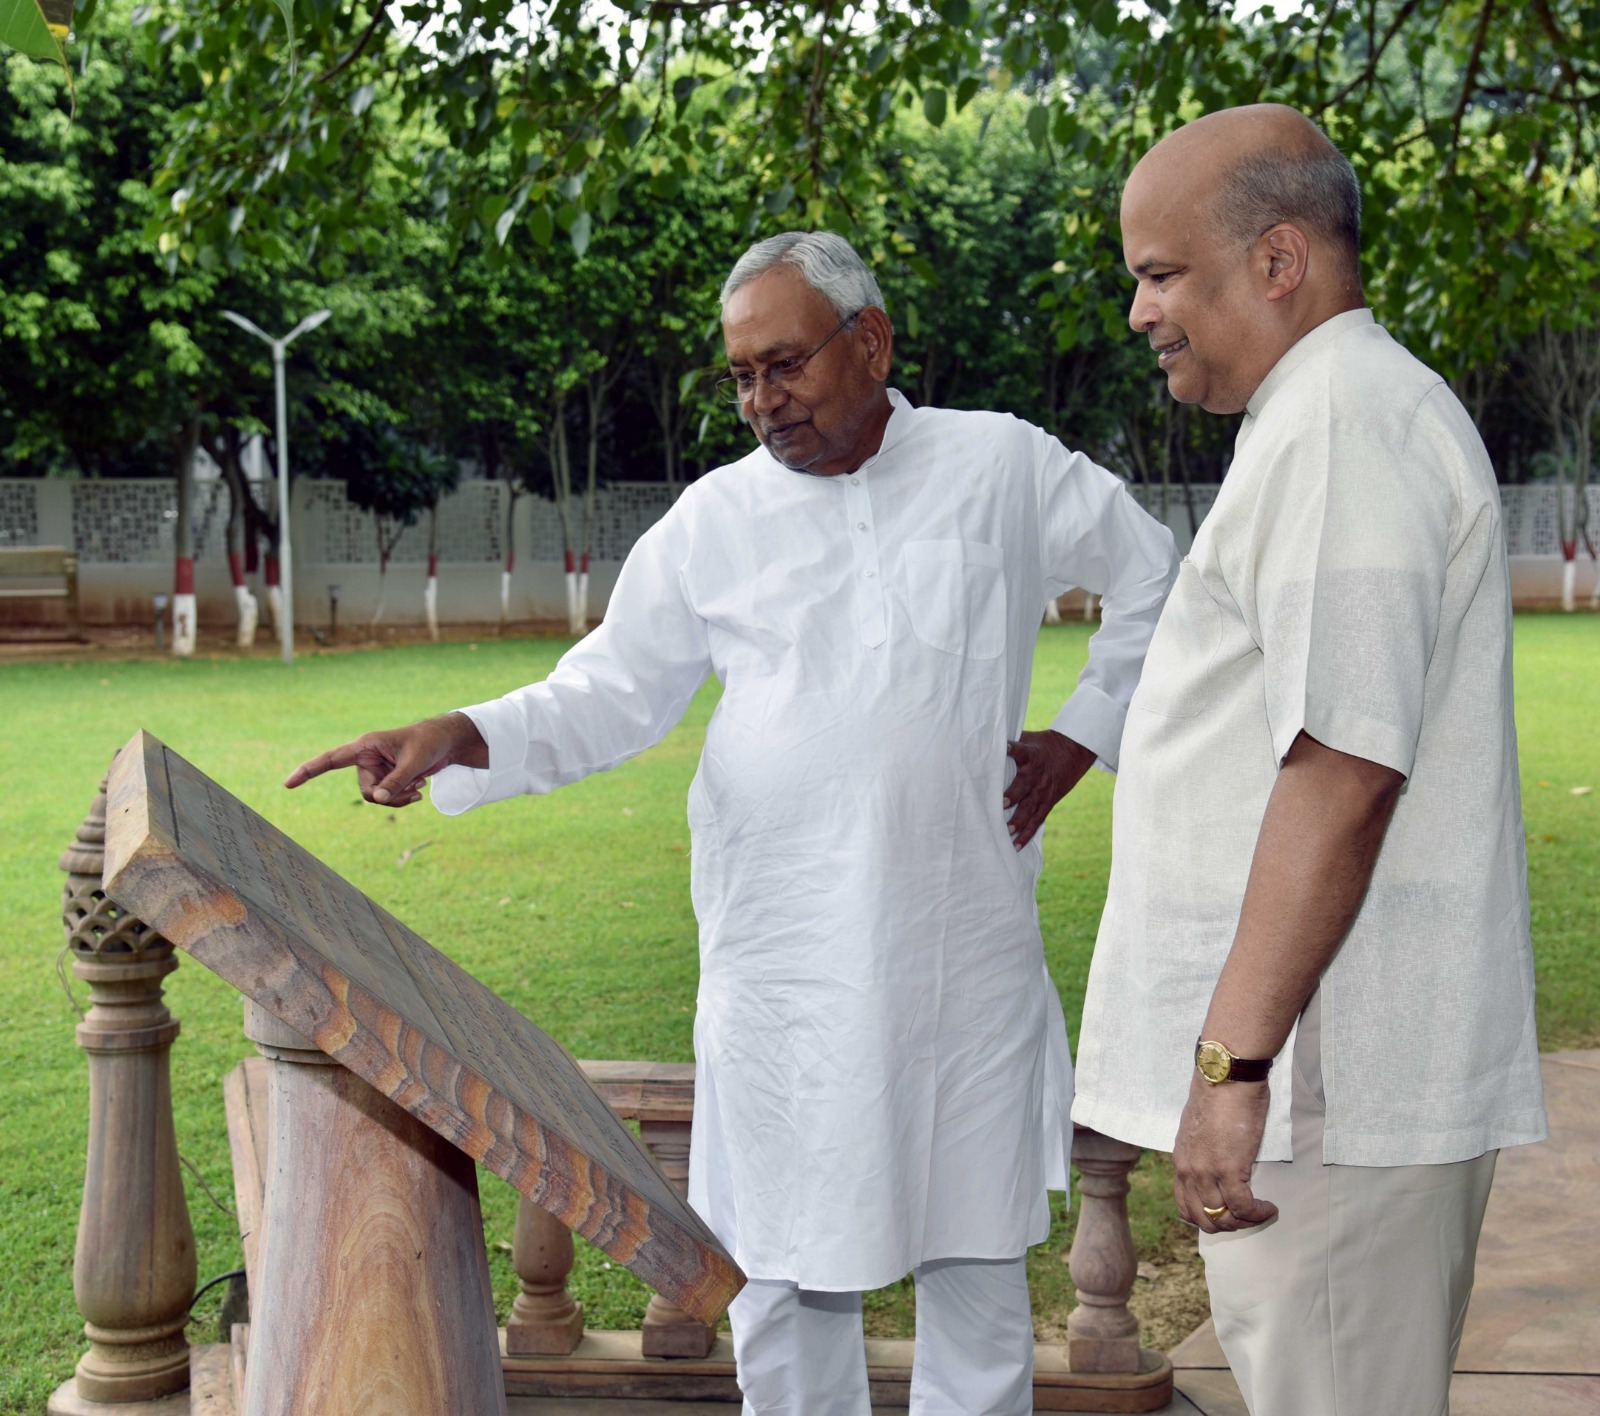 श्रीलंका के उच्चायुक्त अशोक मिलिन्डा मोरागोडा ने मुख्यमंत्री नीतीश कुमार से शिष्टाचार मुलाकात